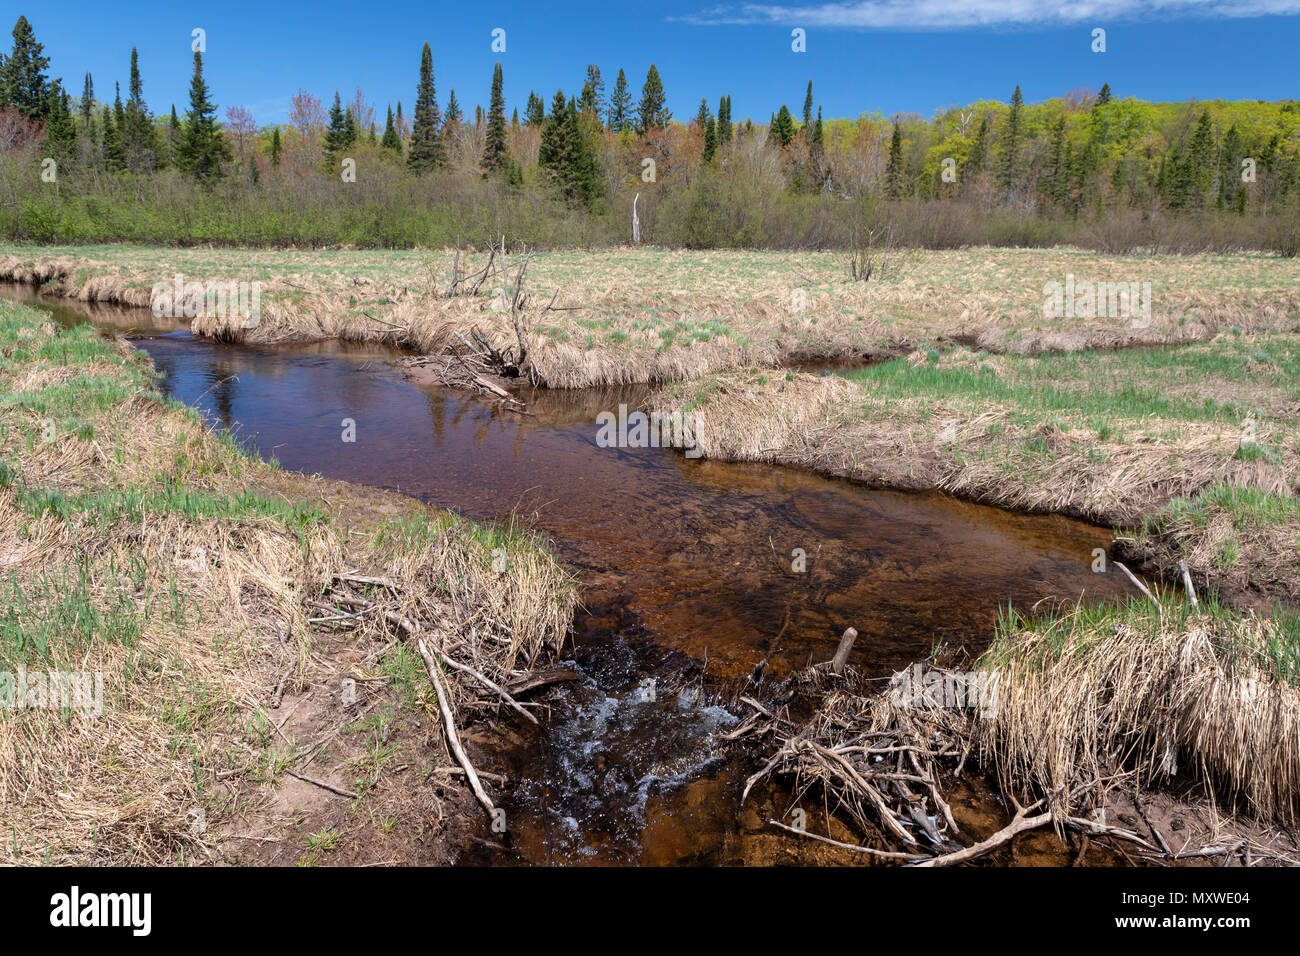 Ontonagon, Michigan - Der kleine Karpfen Fluss in Porcupine Mountains Wilderness State Park. Wasser im Park Streams ist oft Braun durch Gerbstoffe ausgelaugt Stockfoto